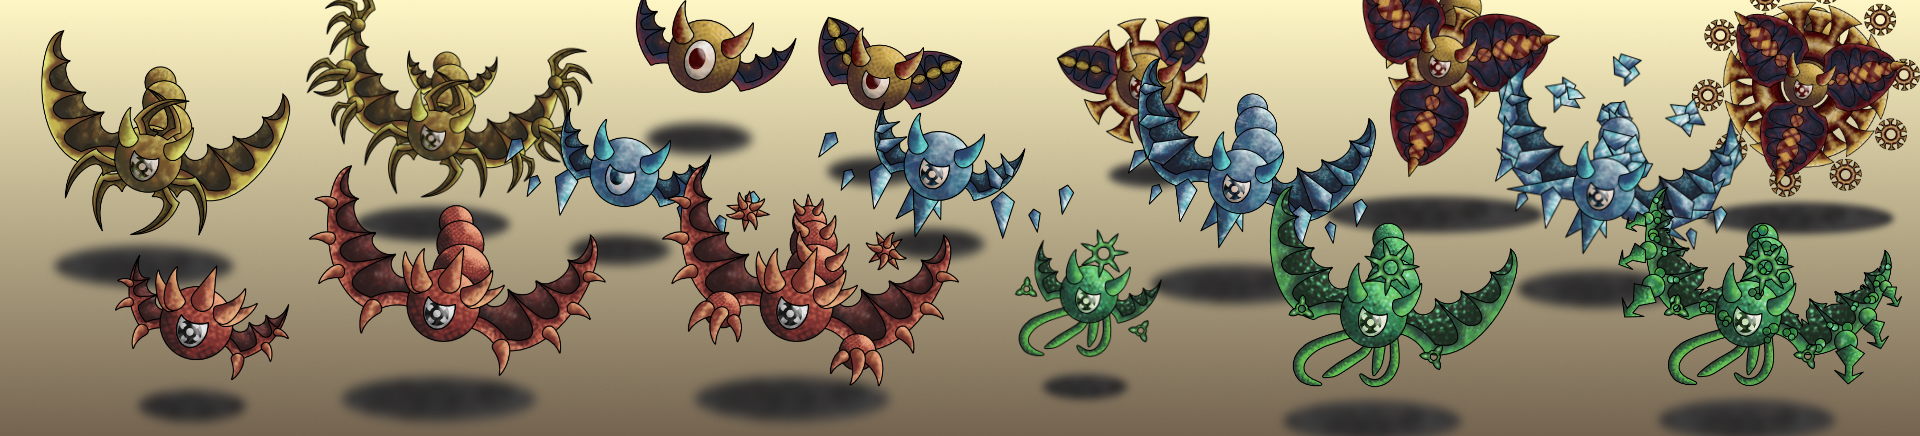 Monster Battler Pack Creatures 1-5